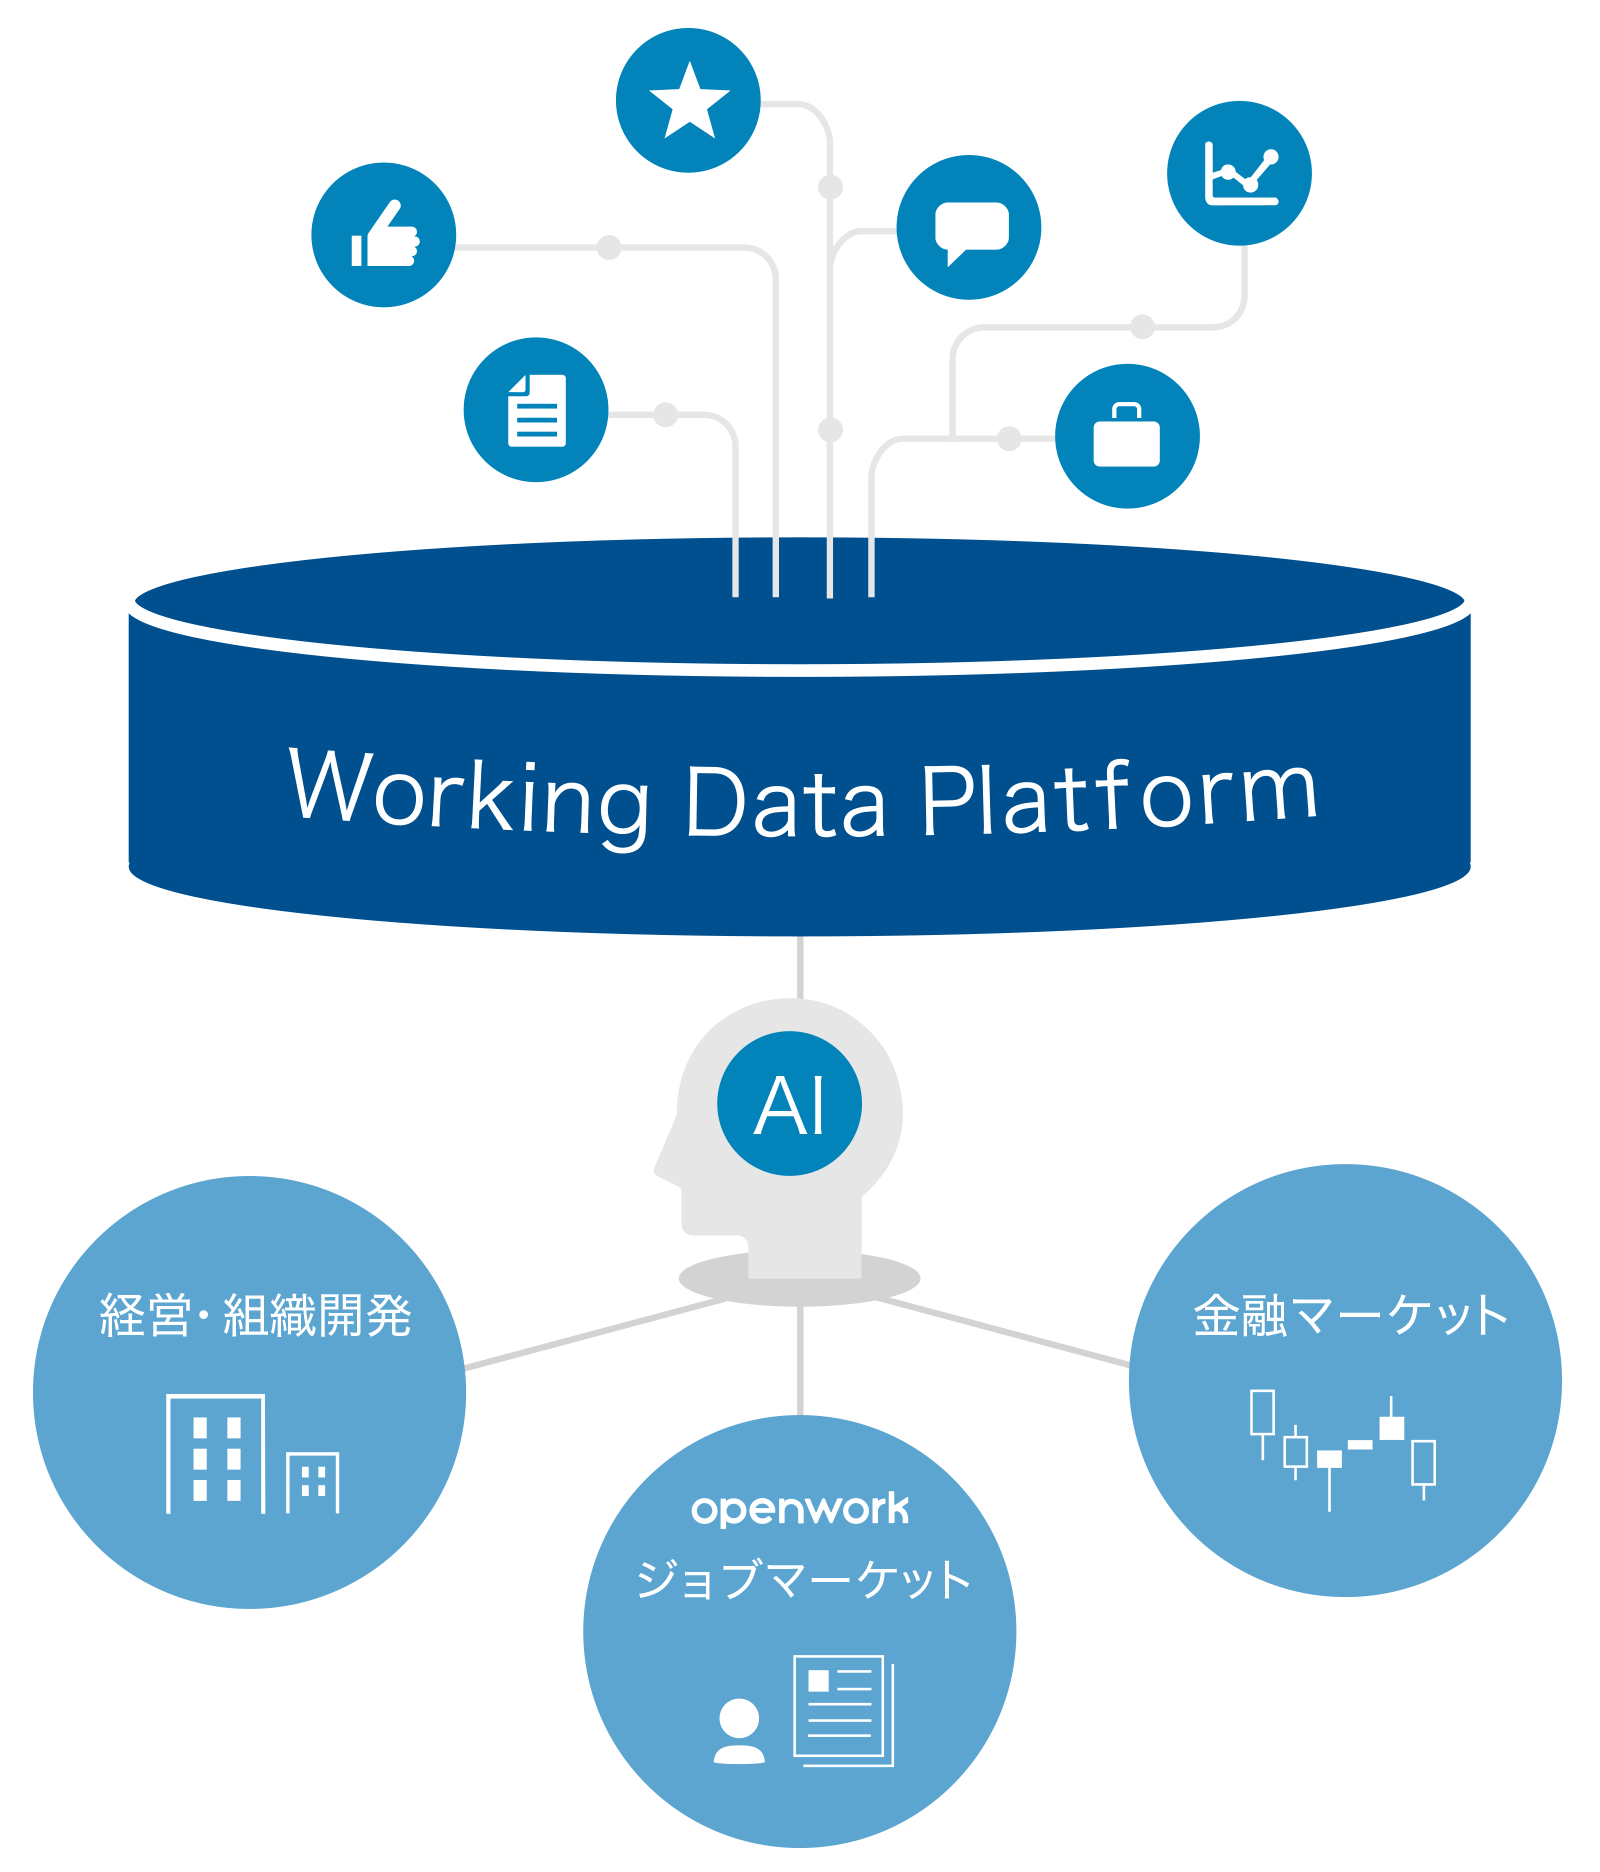 Working Data Platform